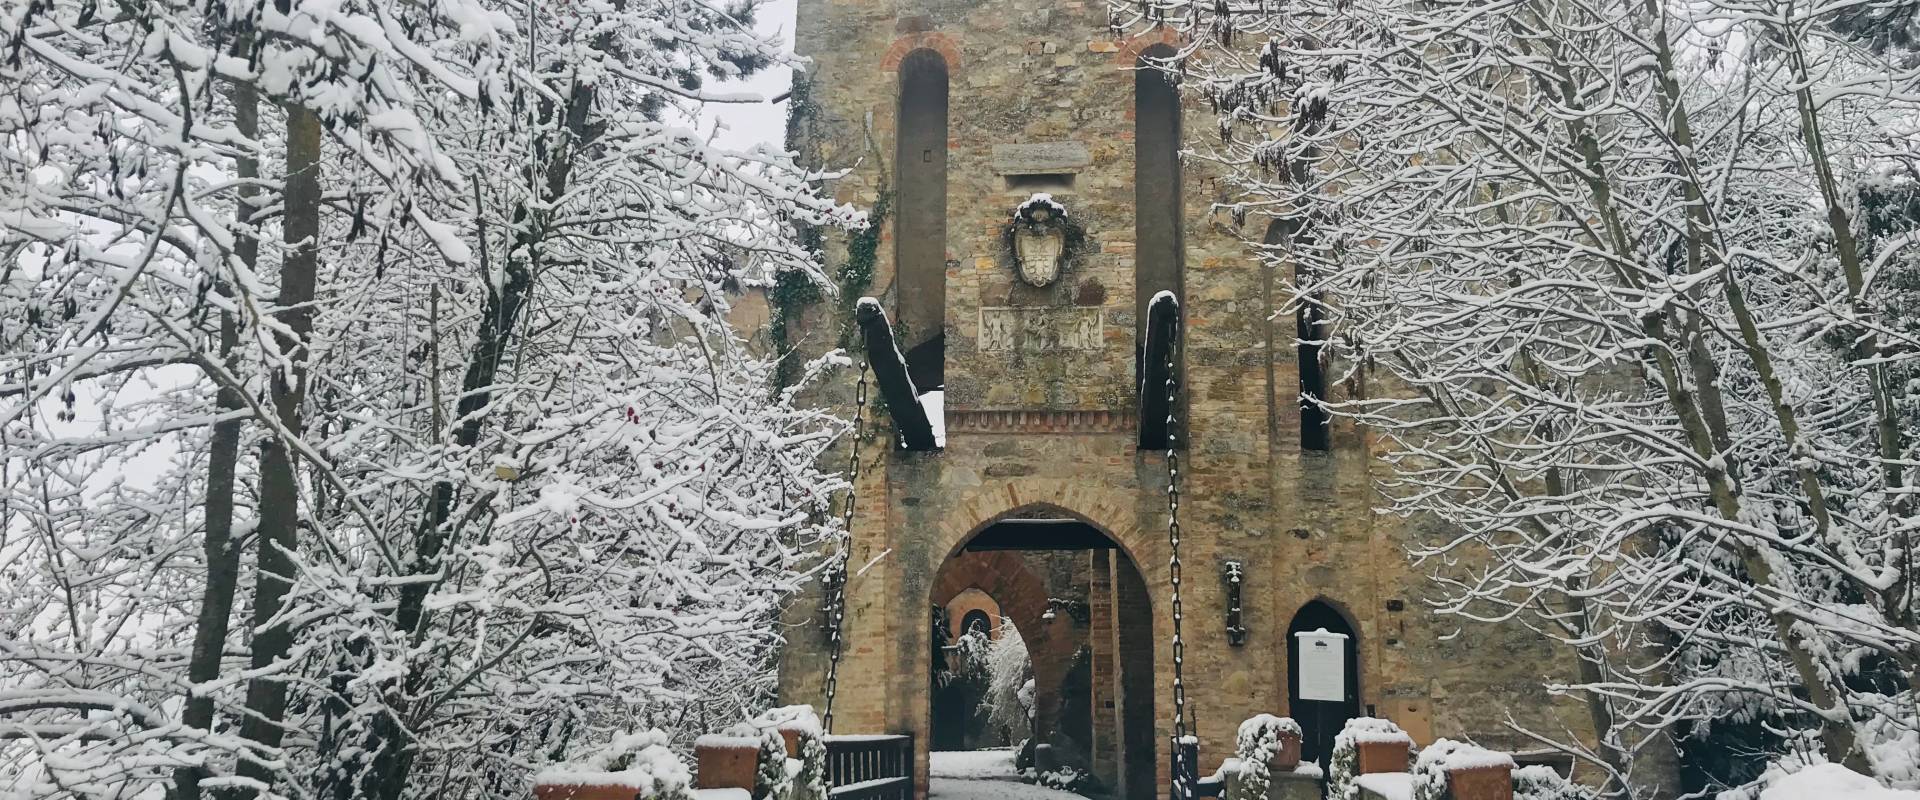 Castle of Gropparello under the snow photo by maria rita Trecci